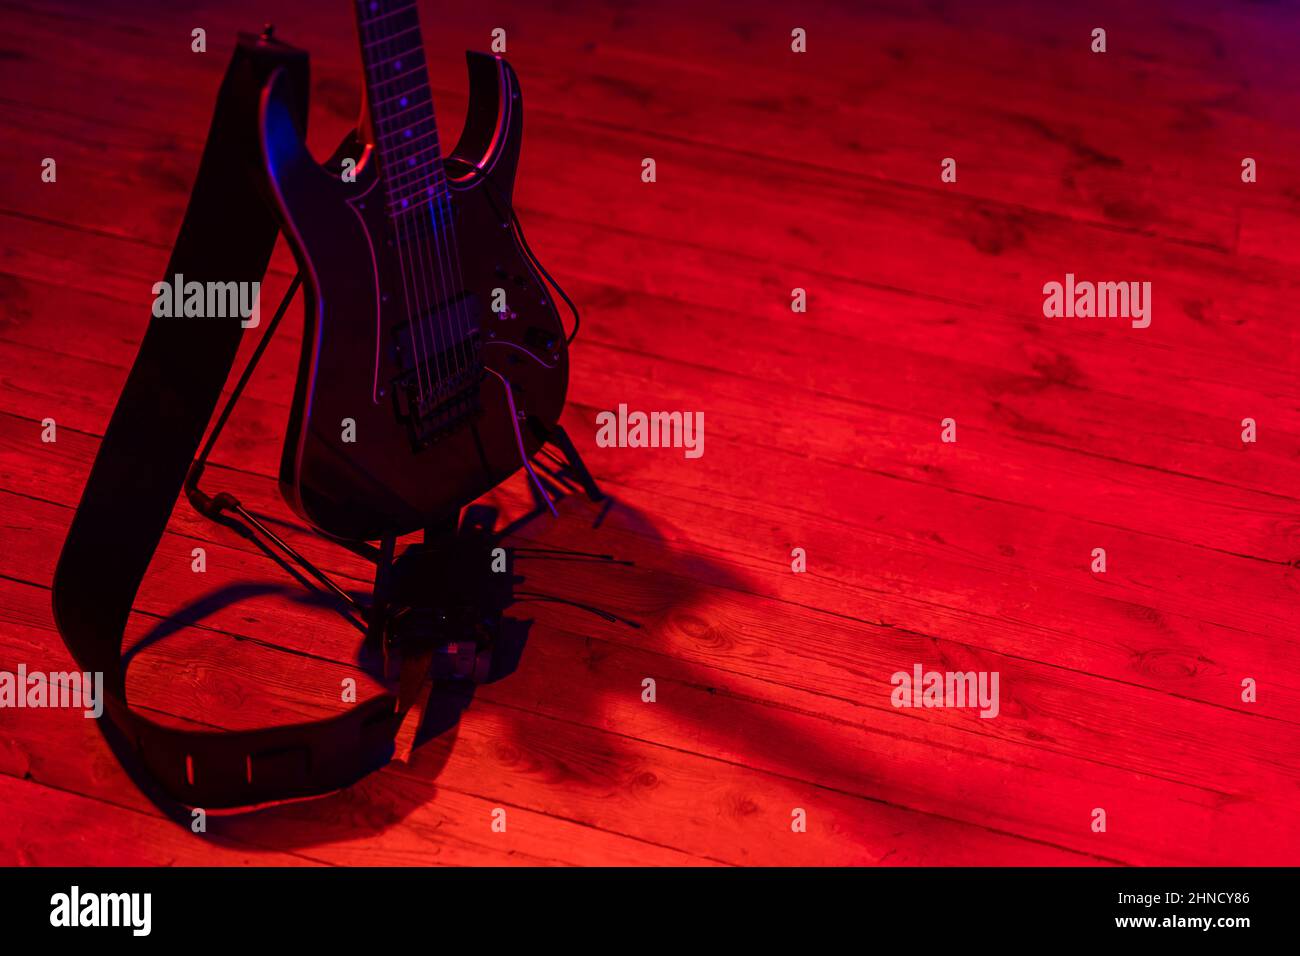 Eine schwarze E-Gitarre, die auf einem auf der Bühne platzierten Ständer basiert. Motiv wird durch starkes rotes Licht beleuchtet. Stockfoto